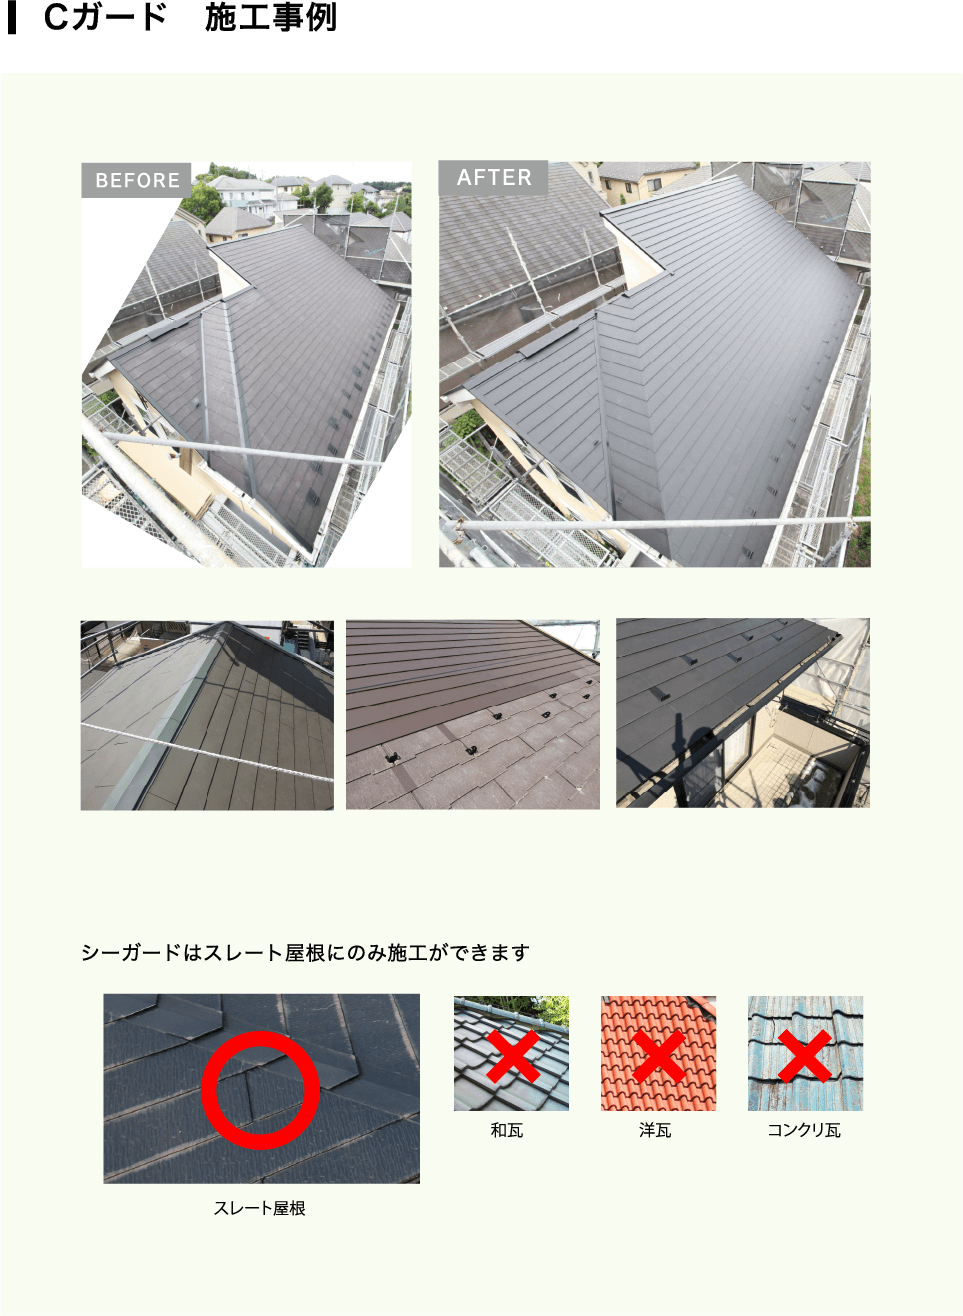 Cガード　施工事例 シーガードはスレート屋根にのみ施工ができます